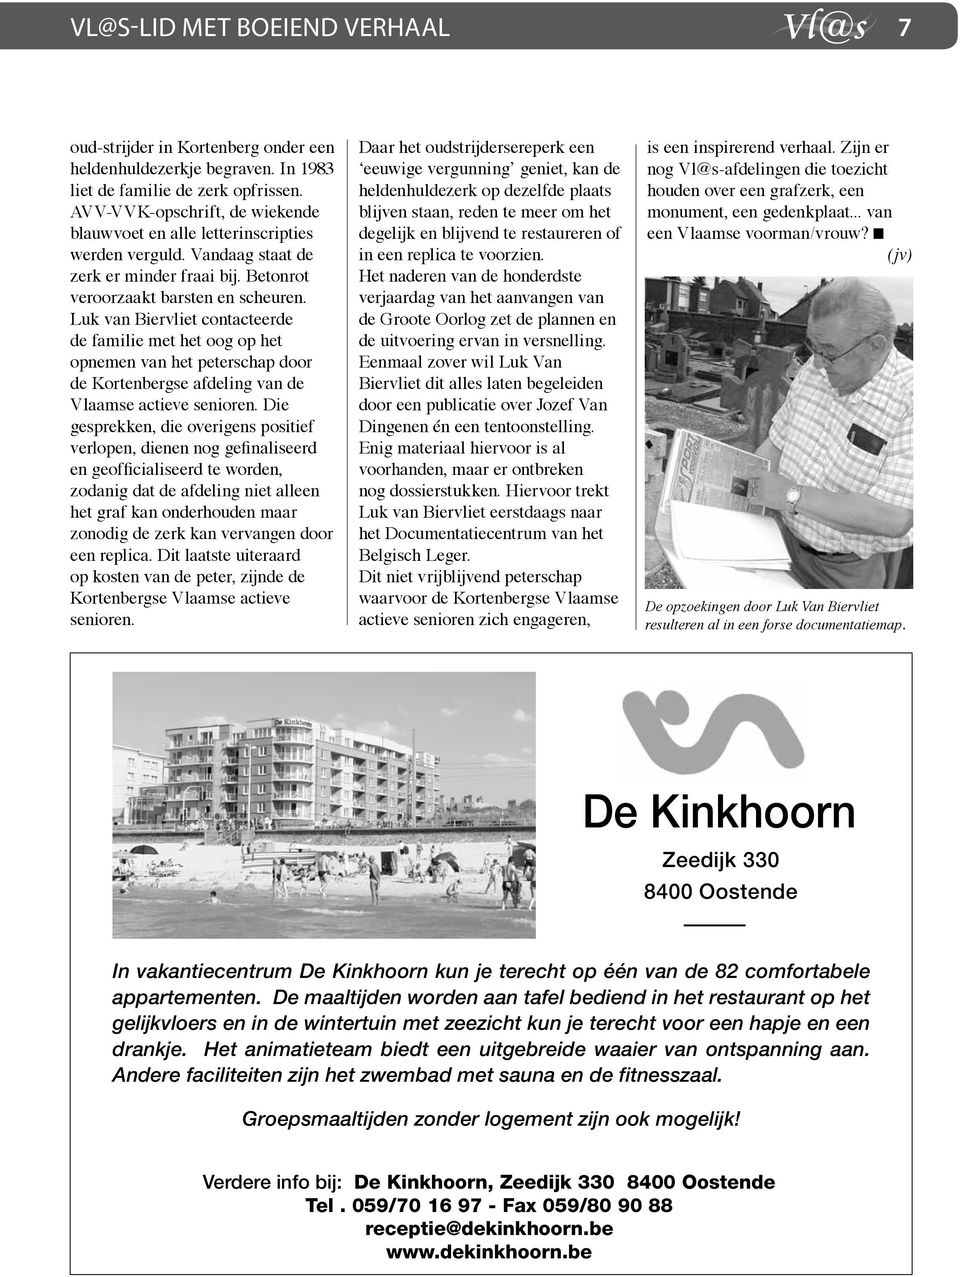 Luk van Biervliet contacteerde de familie met het oog op het opnemen van het peterschap door de Kortenbergse afdeling van de Vlaamse actieve senioren.